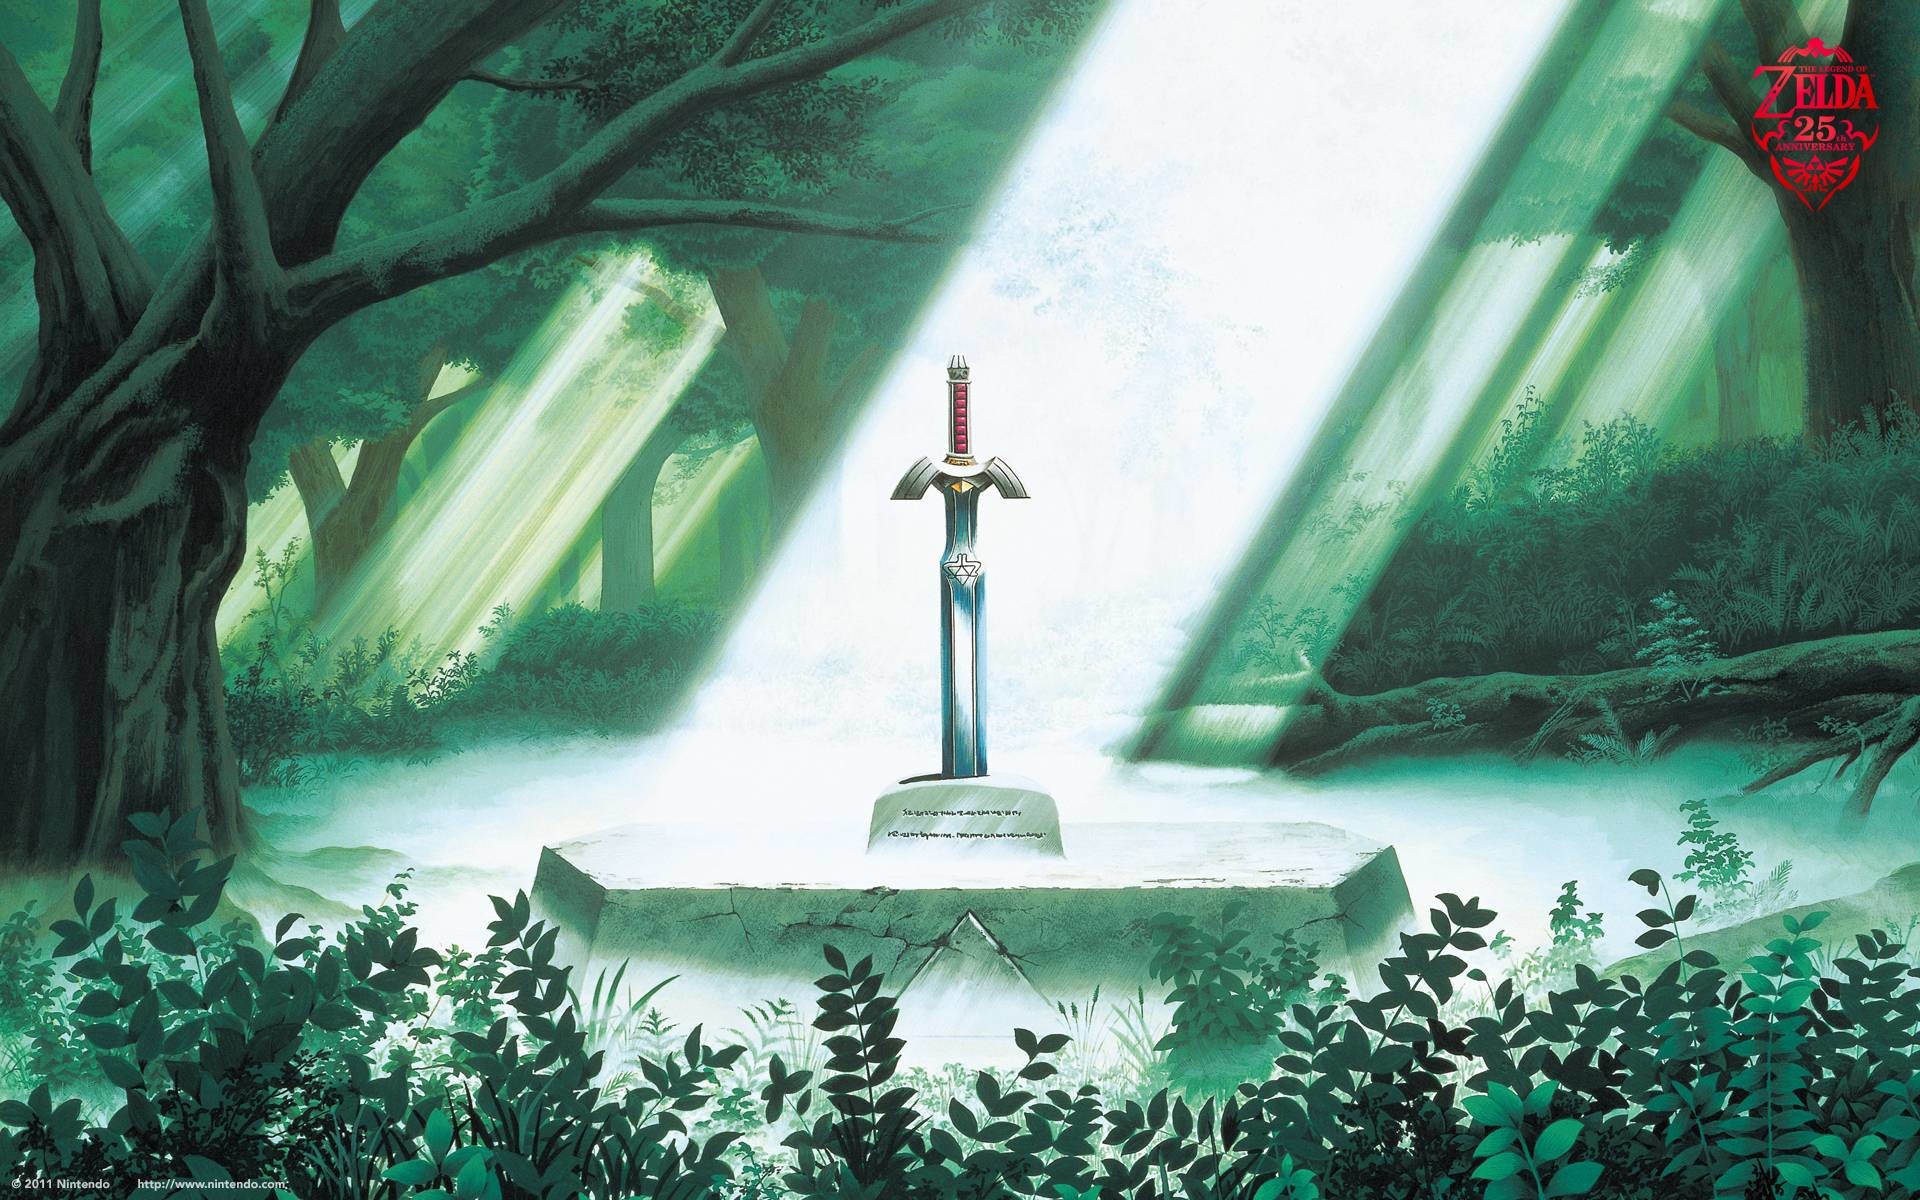 The Legend of Zelda wallpaper – Imagesih